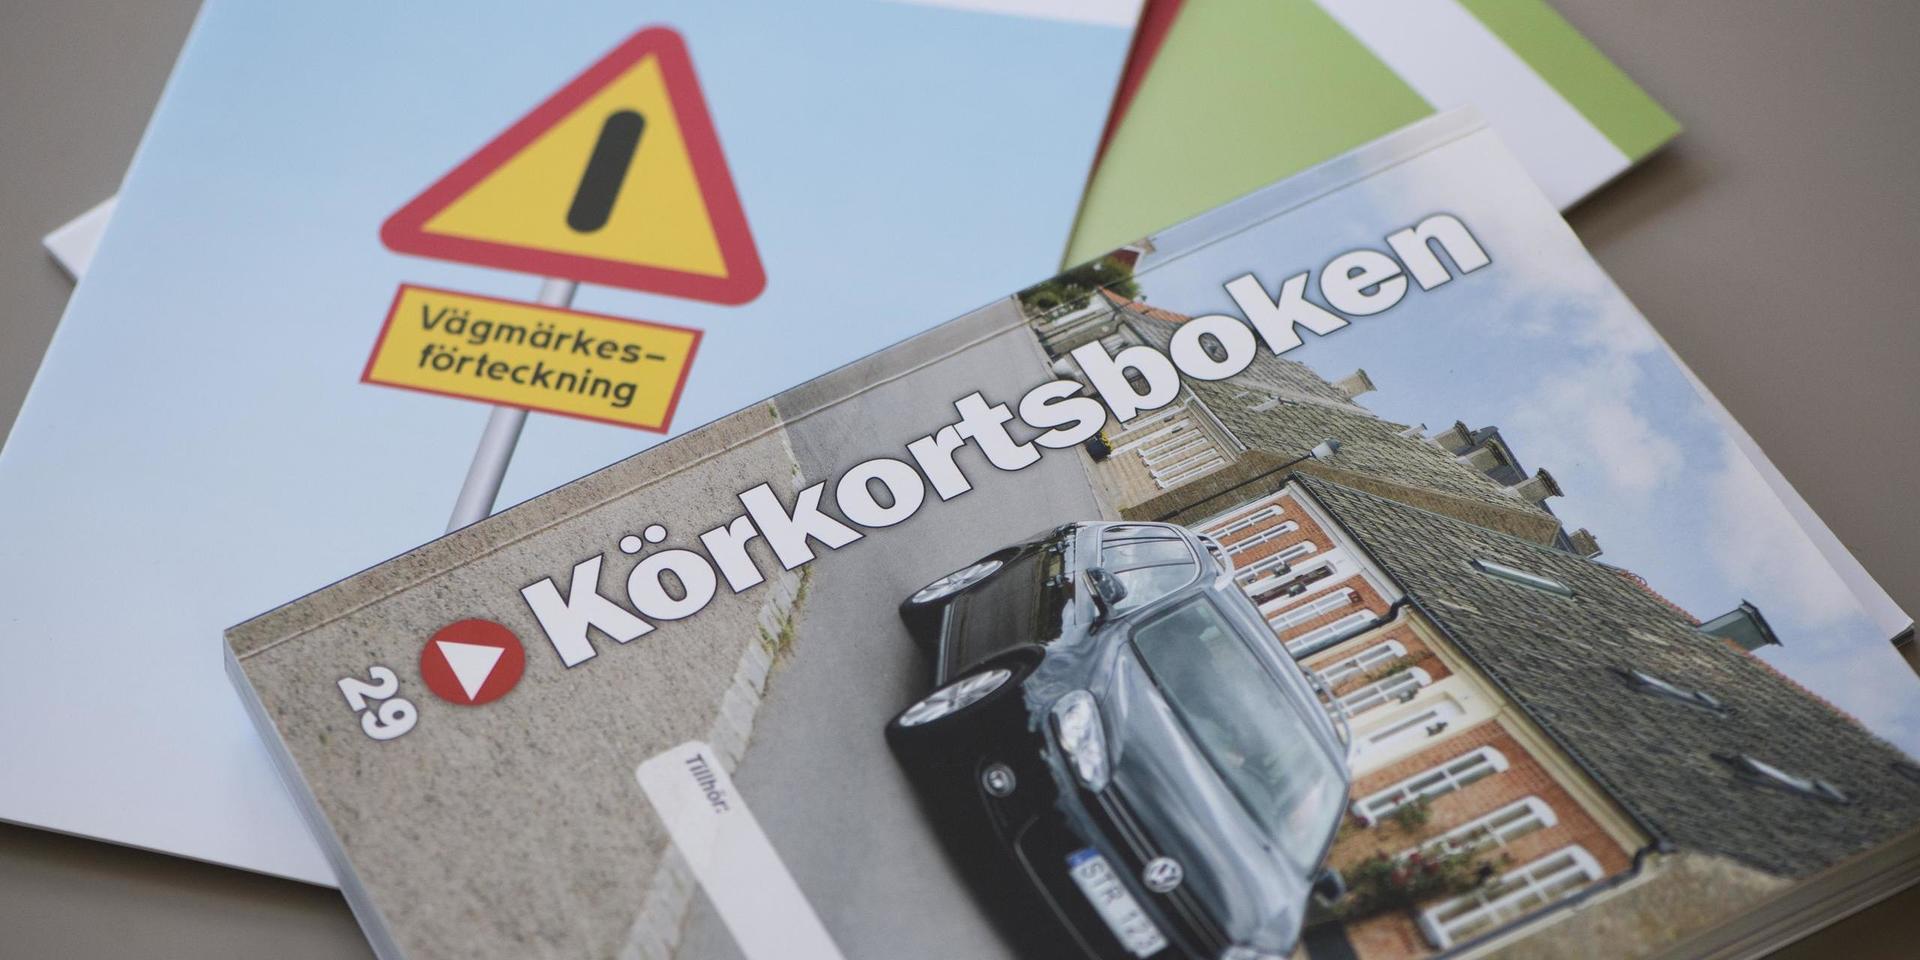 Det behövs fler trafiklärare, särskilt i södra Sverige, enligt branschorganisationen. Arkivbild.